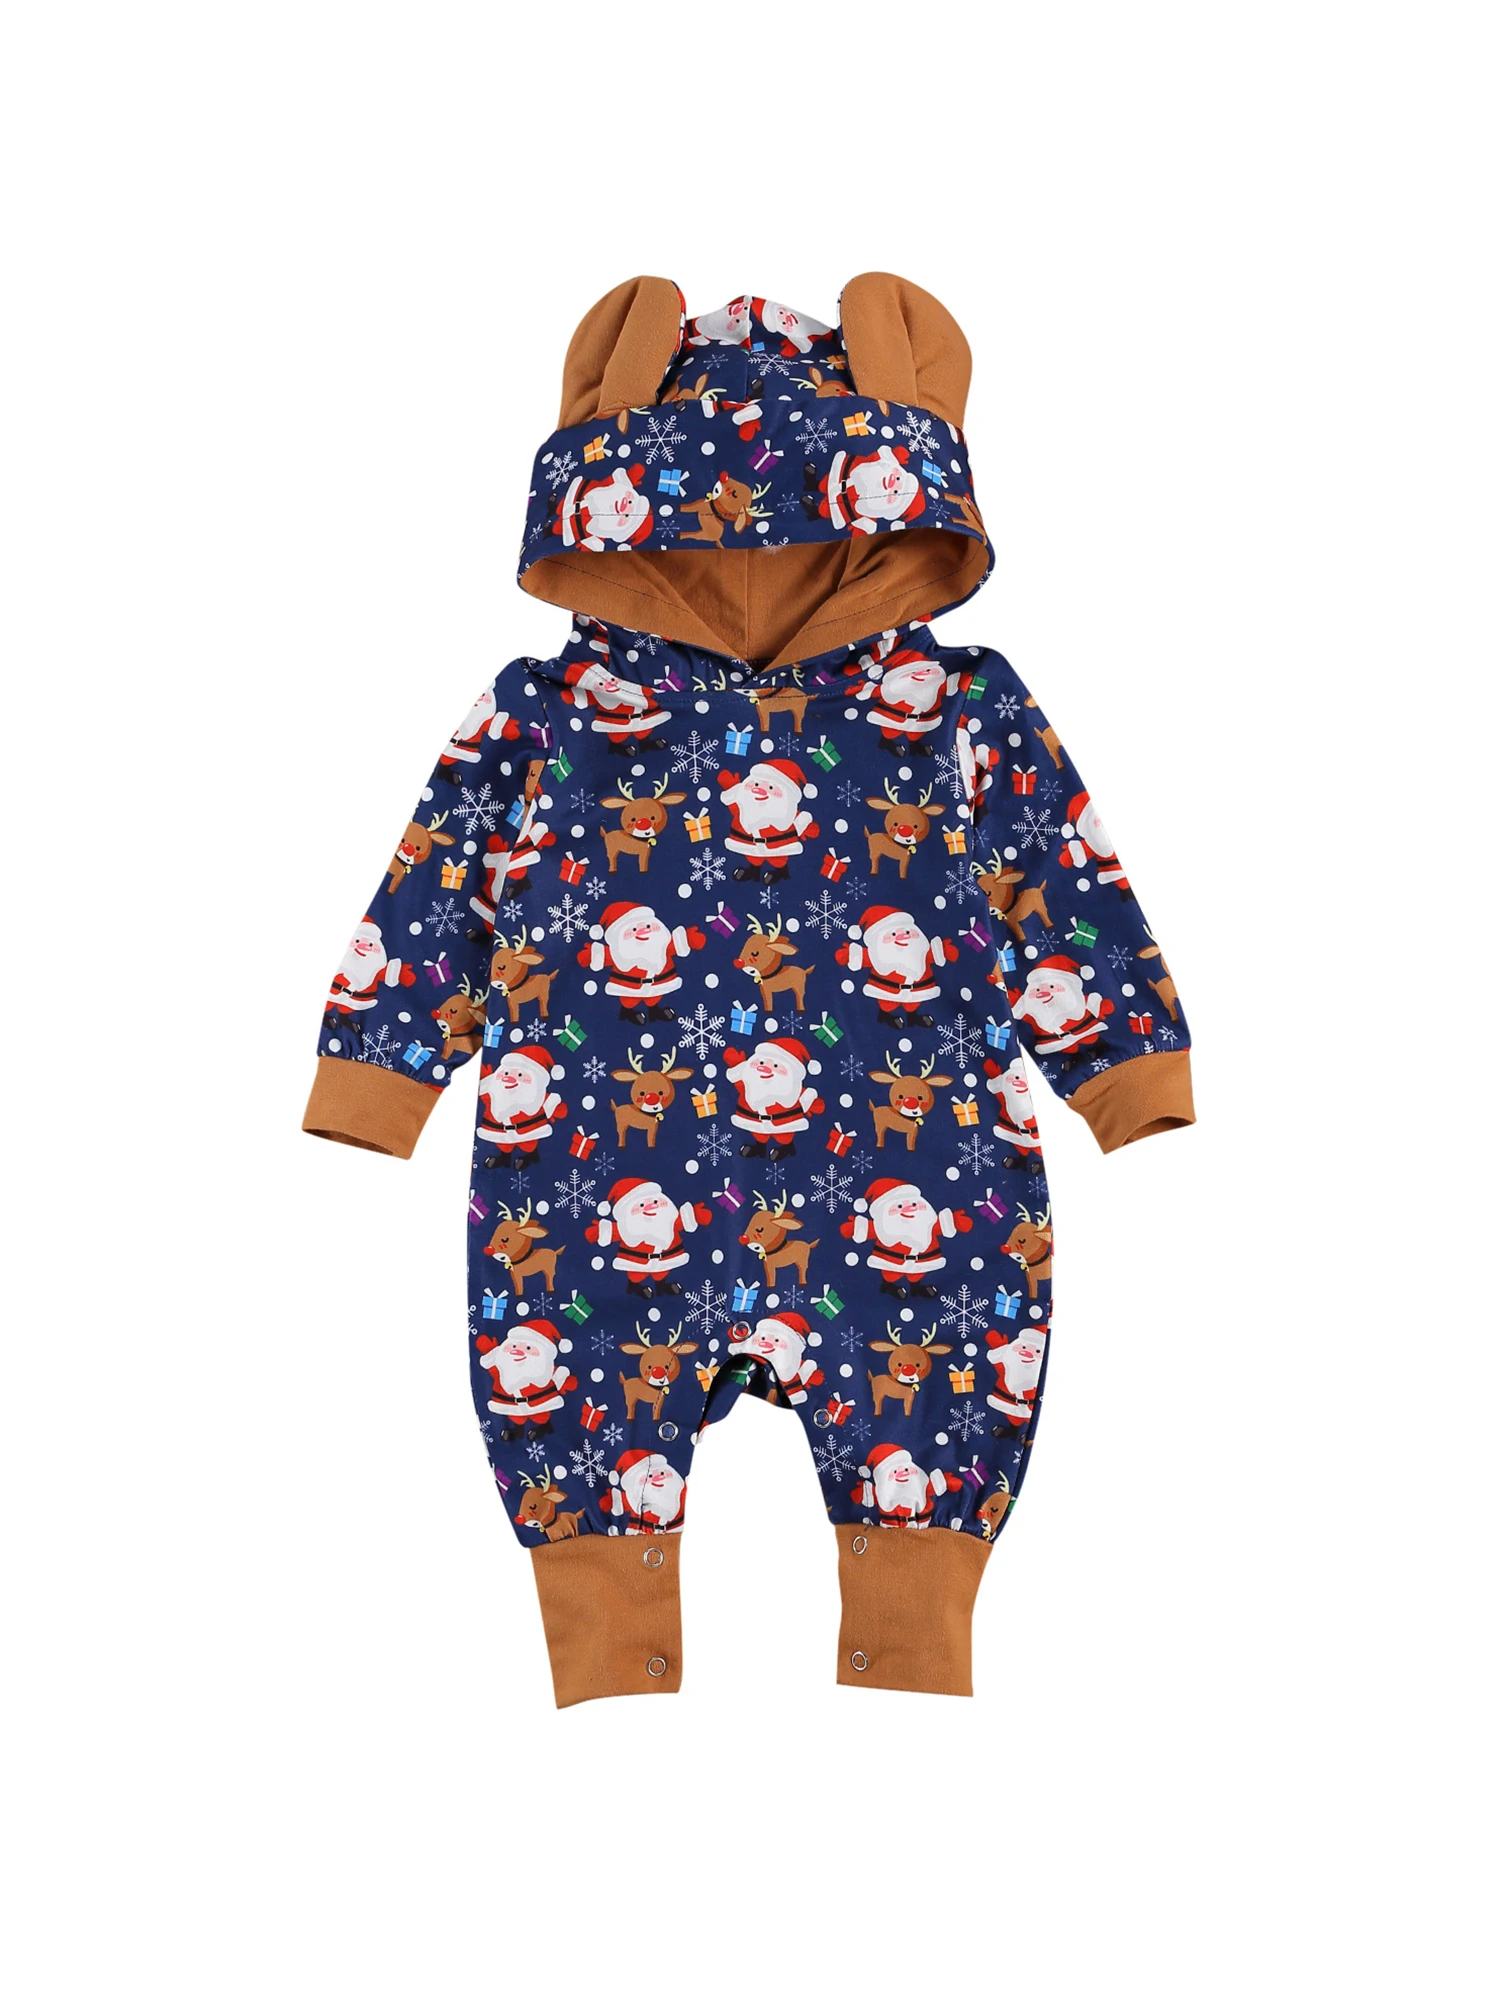 

Children's Romper Baby's Big Ears Christmas Reindeer Printed One Piece Garment Long Sleeve Hoodie for Infants